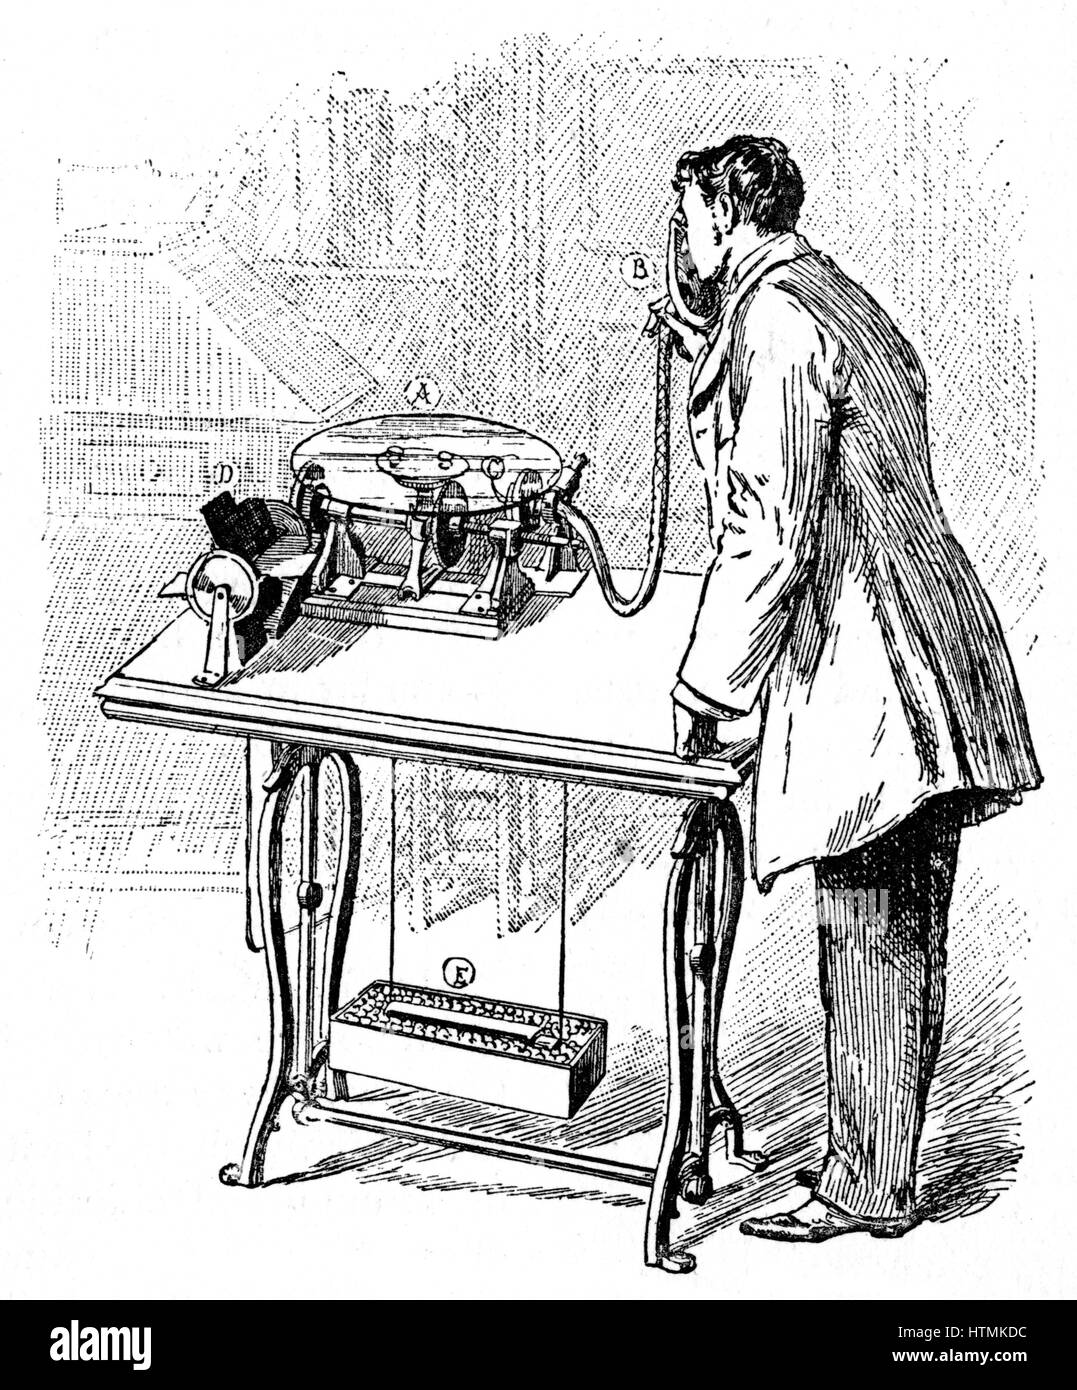 Effettuare la registrazione su Emile Berliner il Grammofono (1887). Parla nel tubo prodotto traccia sul disco di vetro (A) rivestito con lampada-nero. D, motore elettrico, e la sua batteria. Trace fissato mediante verniciatura, poi copiati in metallo fotograficamente. Da 'Cassell la famiglia Foto Stock